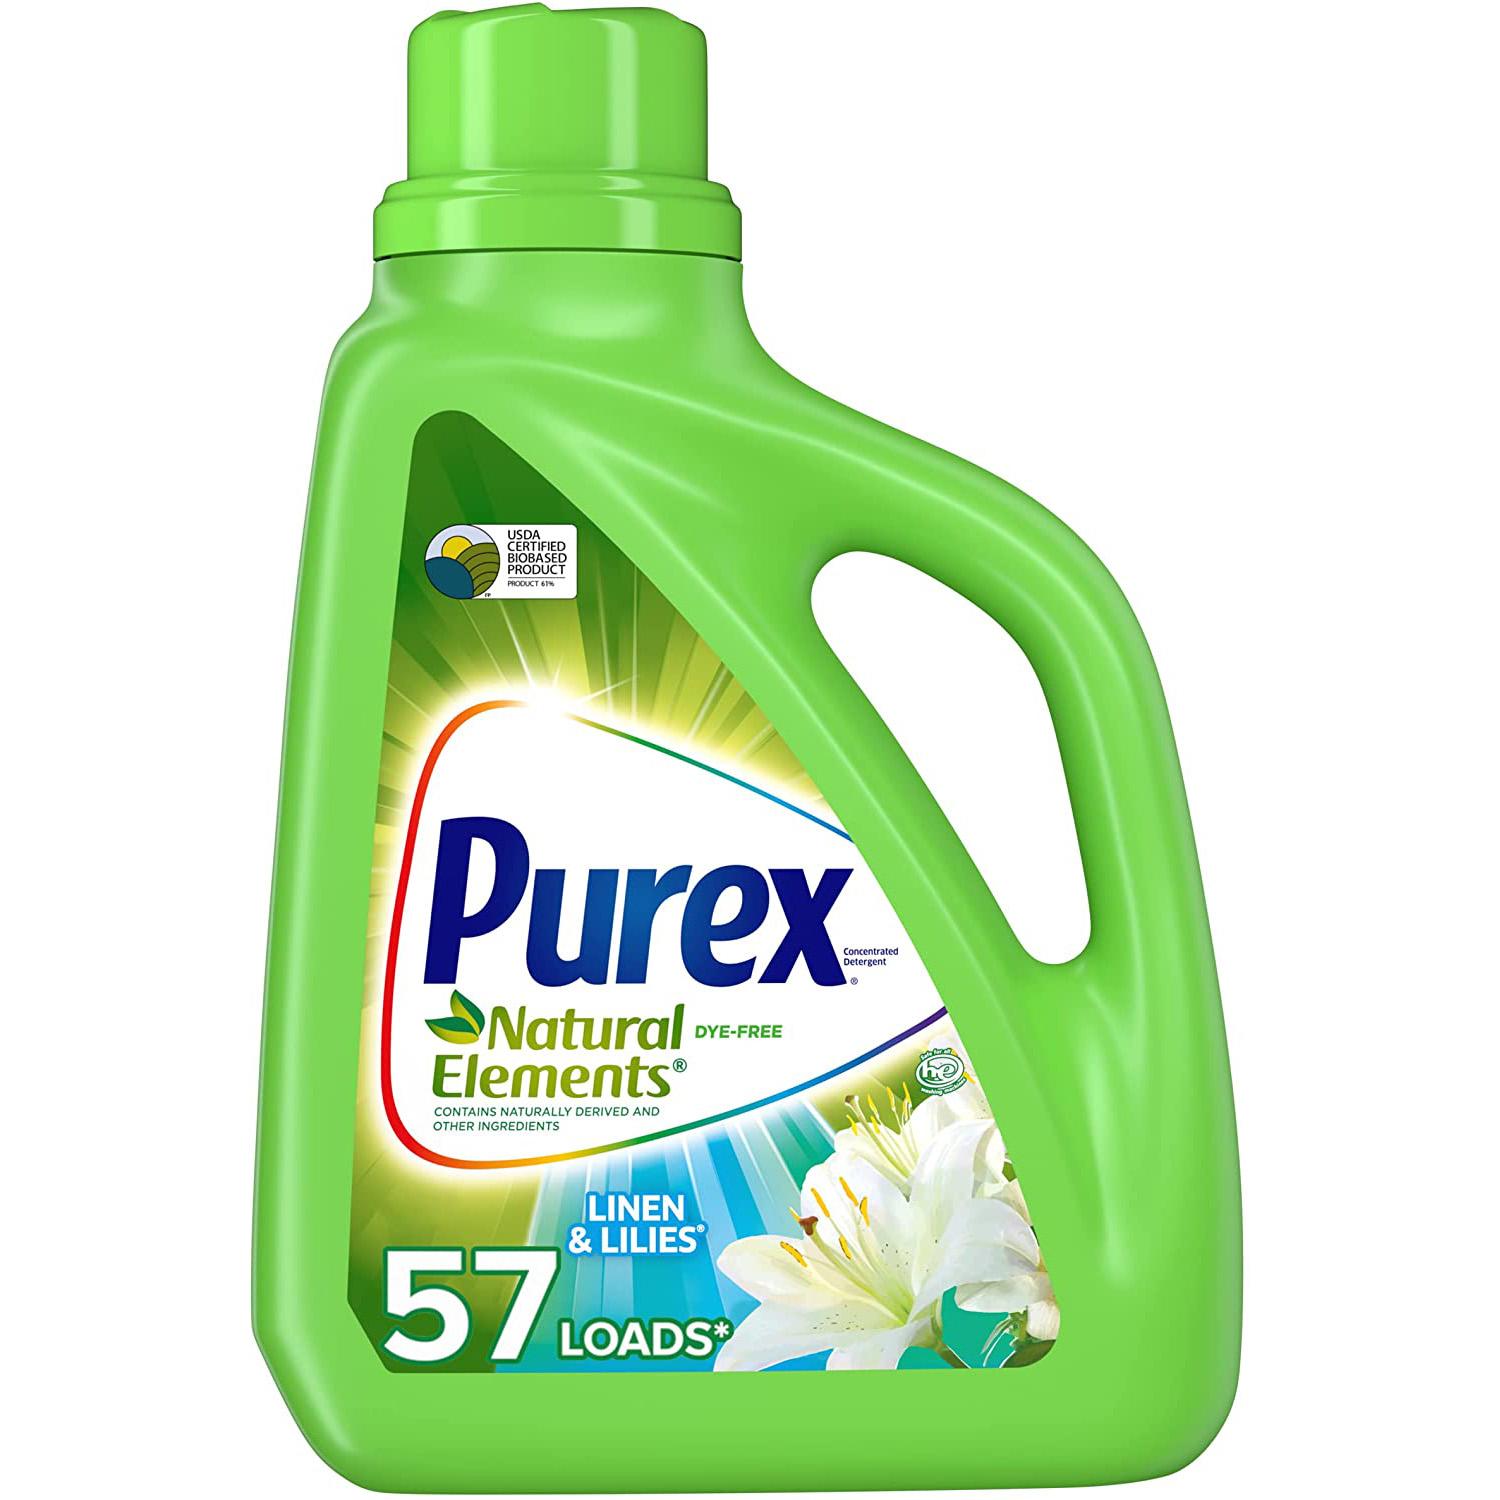  75oz Purex Liquid Laundry Detergent Natural Elements Linen for $2.99